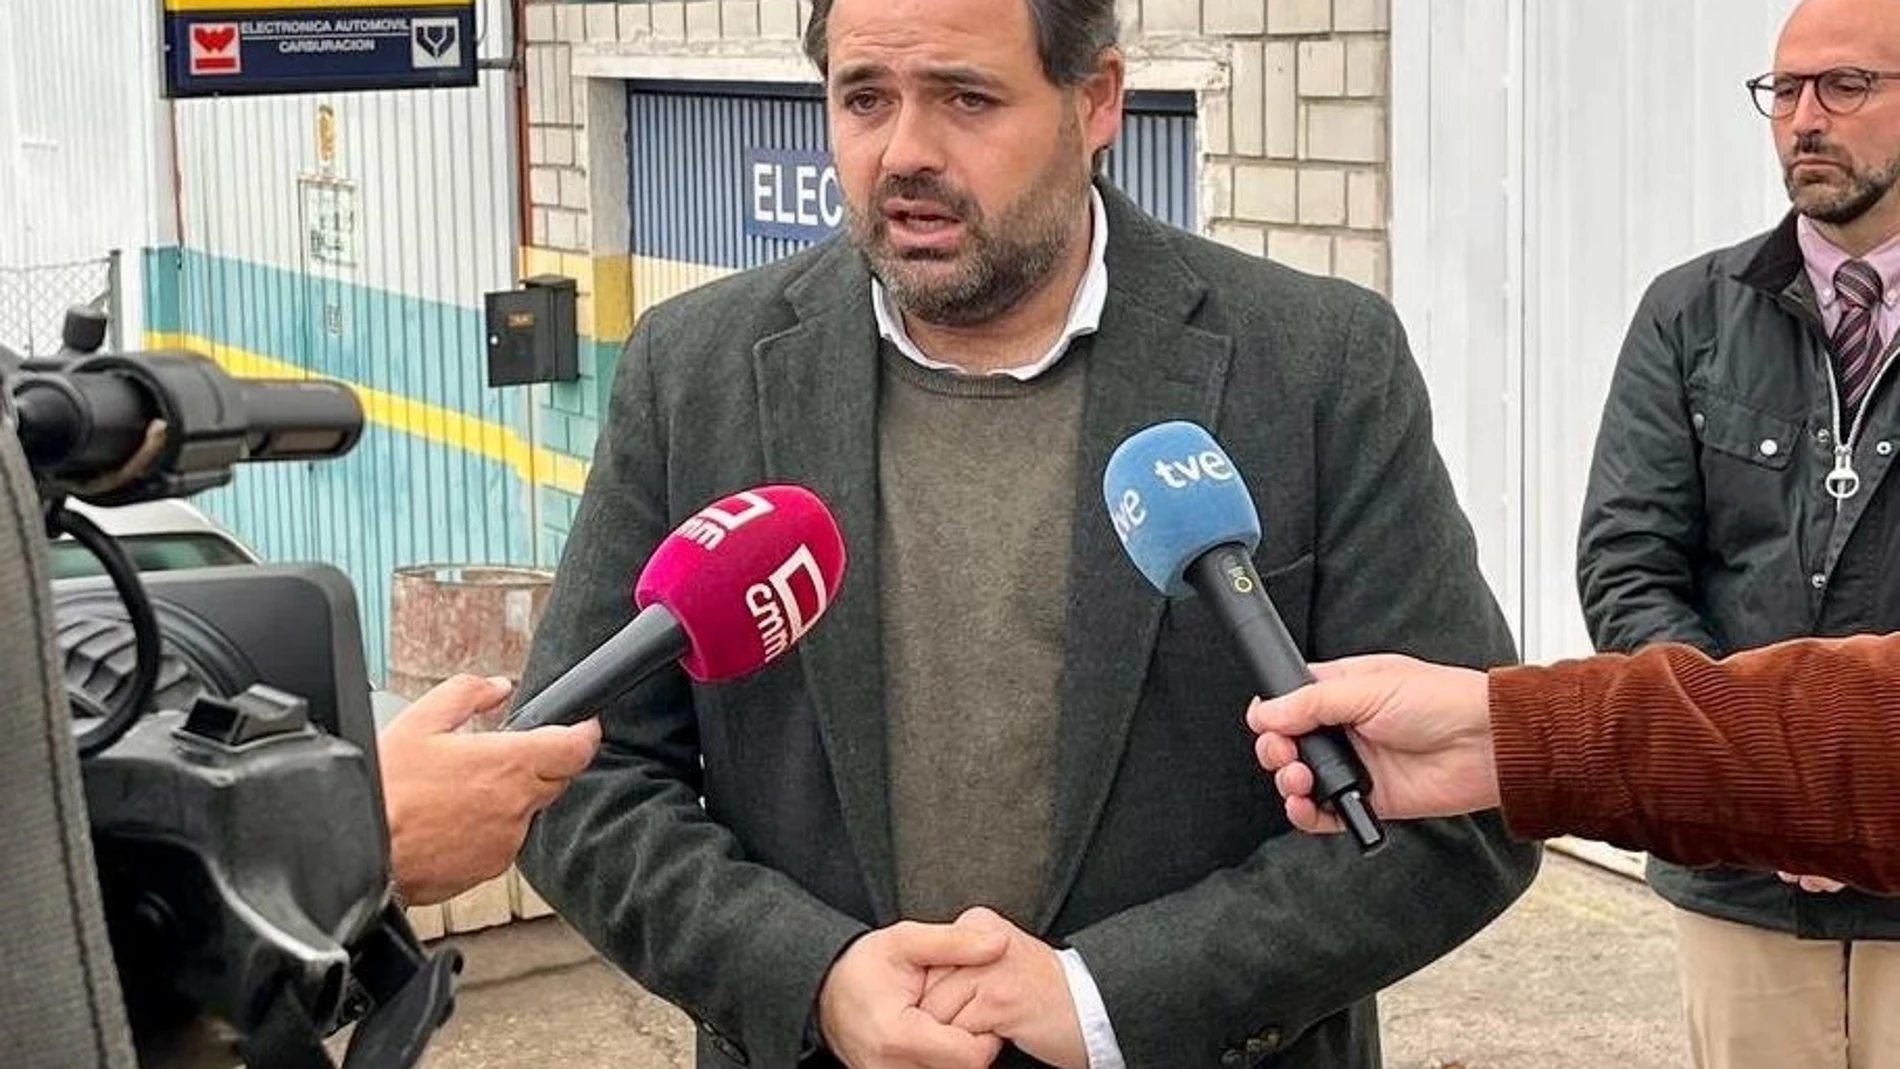 El presidente del Partido Popular de Castilla-La Mancha, Paco Núñez